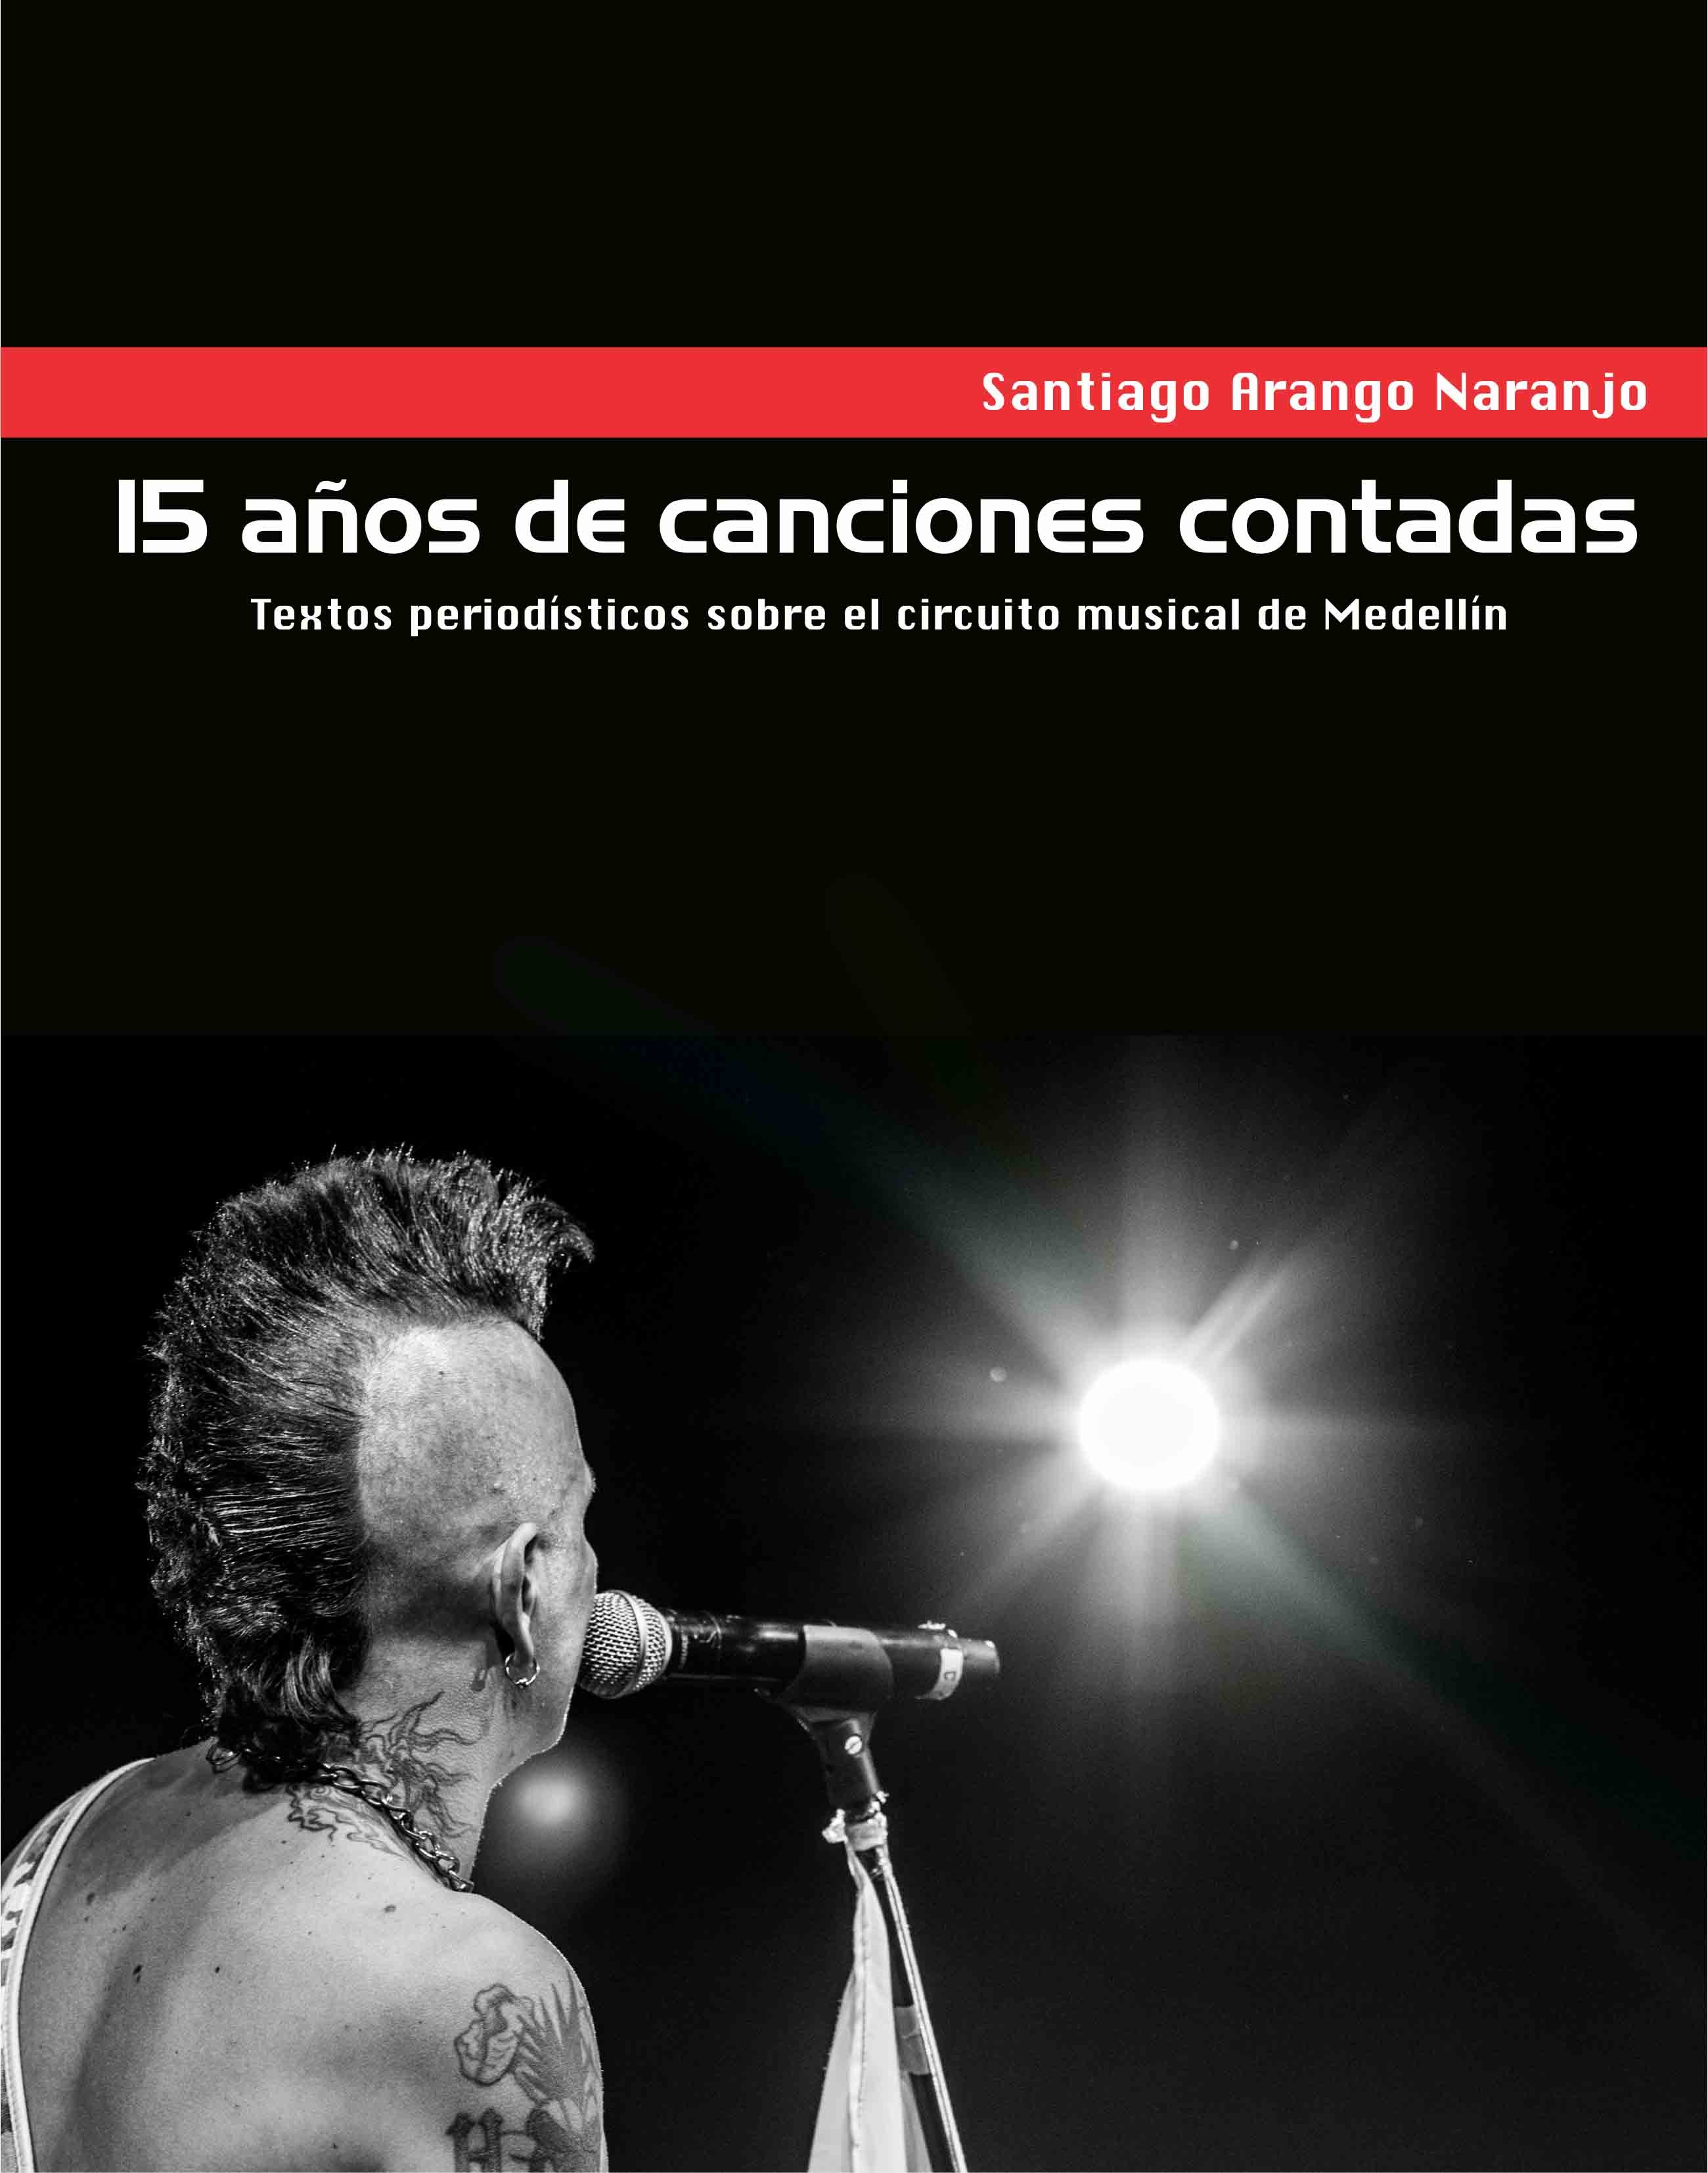 Palabras de lanzamiento del libro: "15 años de canciones contadas"